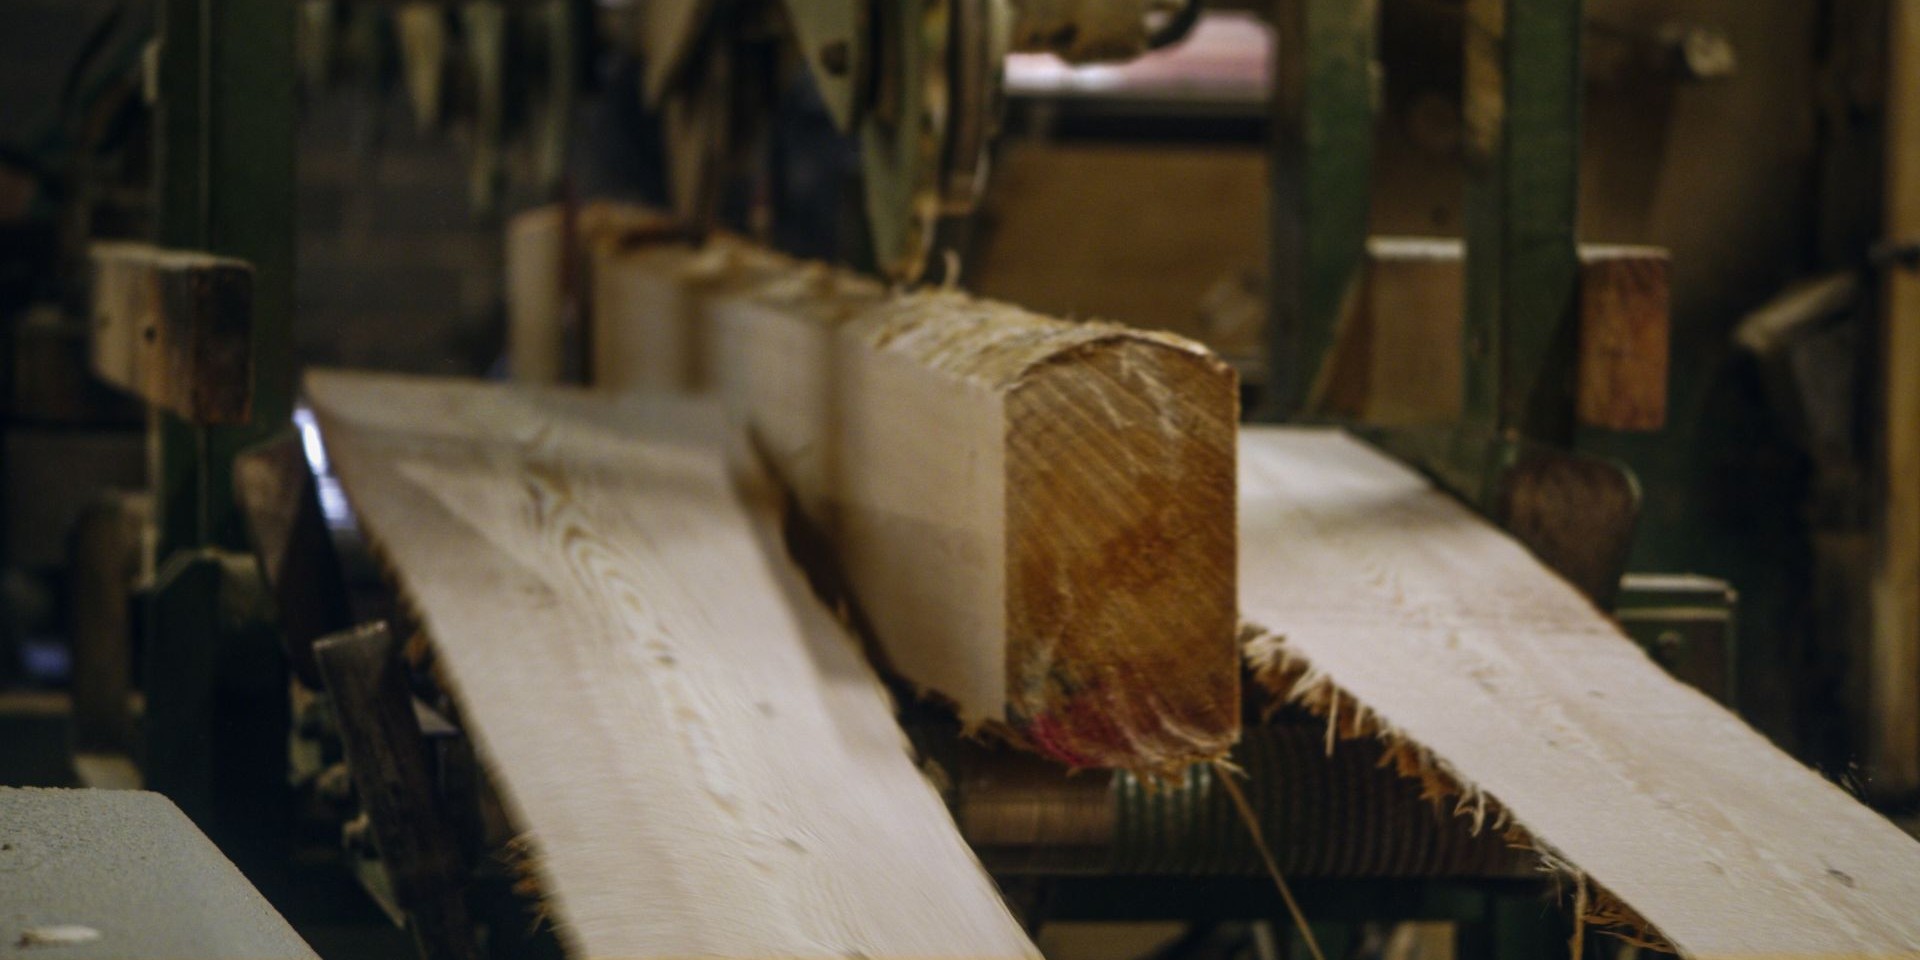 Wood being sawed